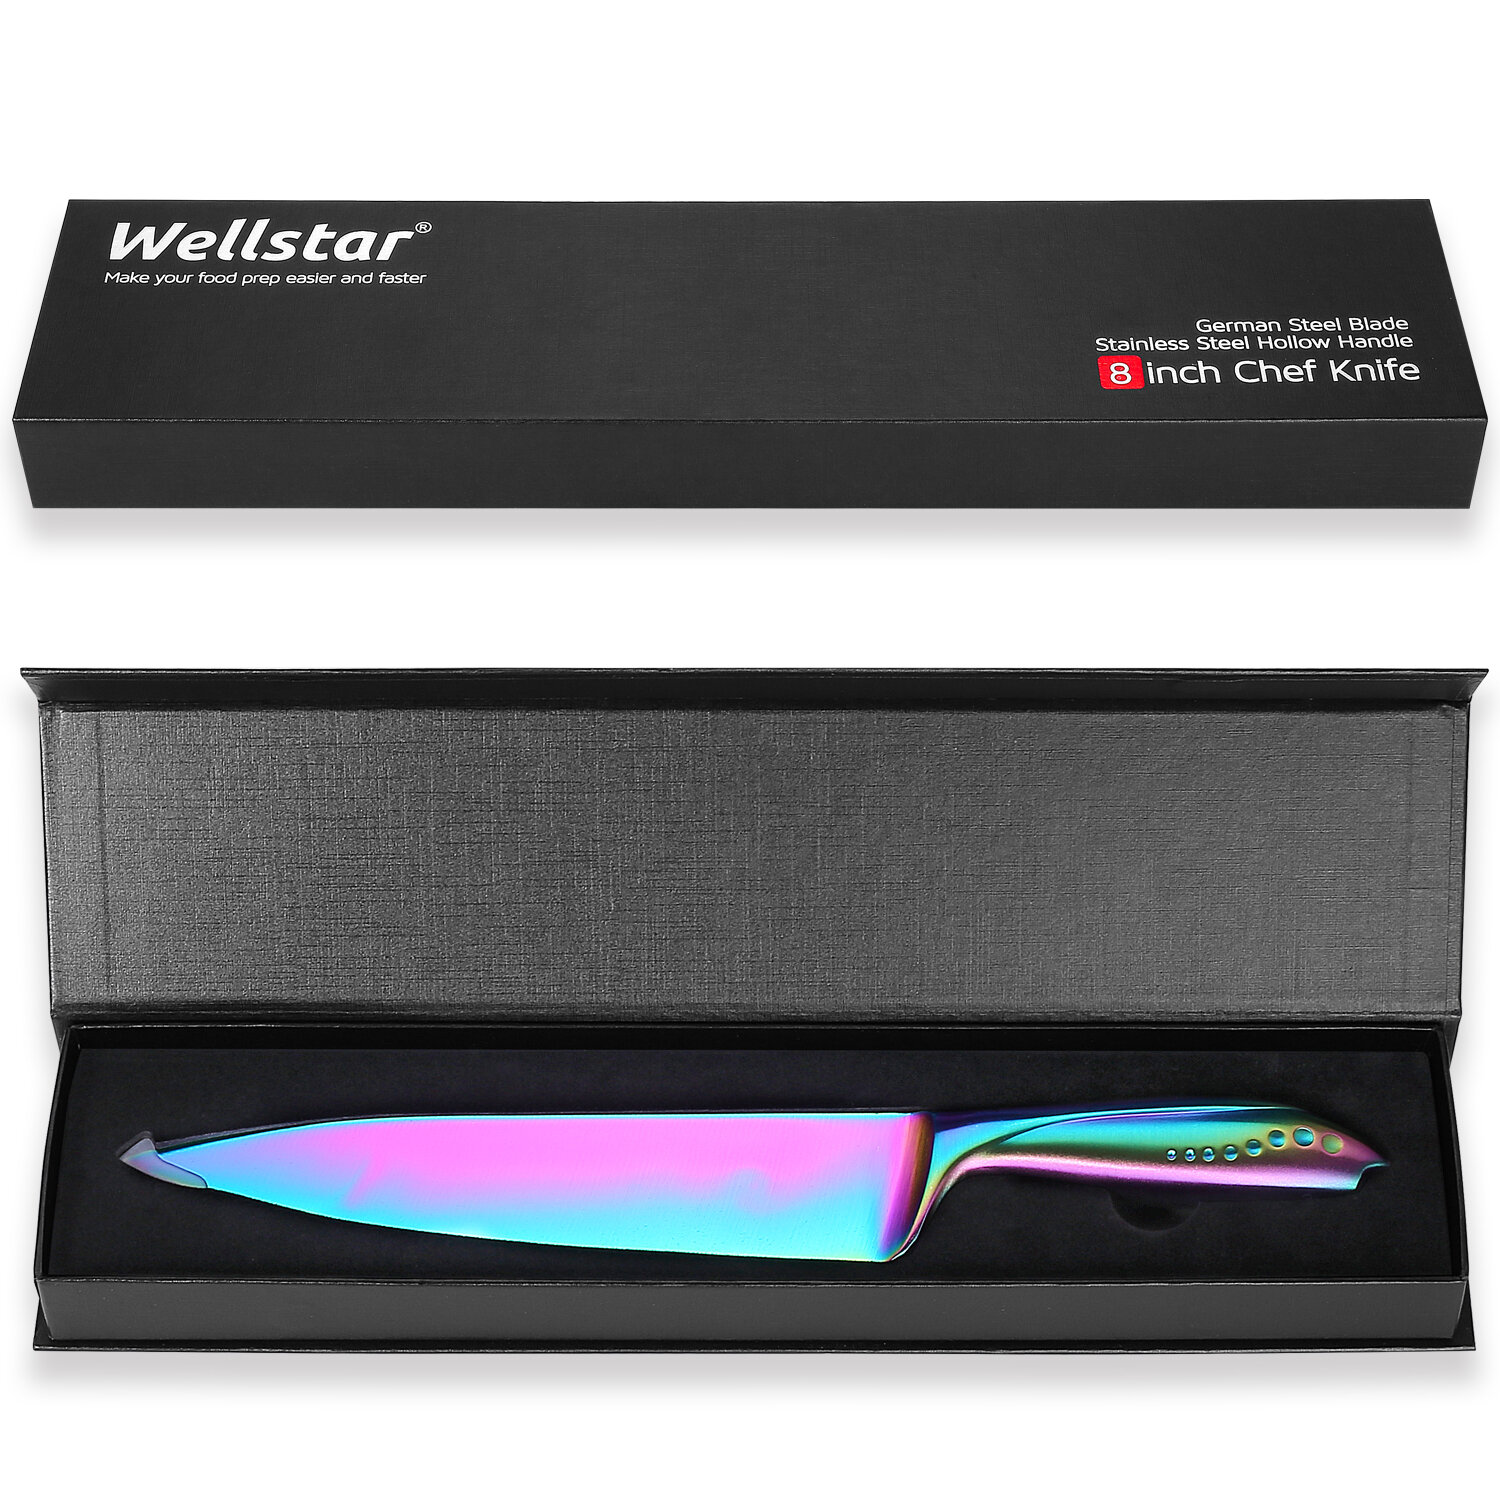 https://assets.wfcdn.com/im/63251195/compr-r85/1505/150525034/wellstar-killer-whales-series-8-chefs-knife.jpg